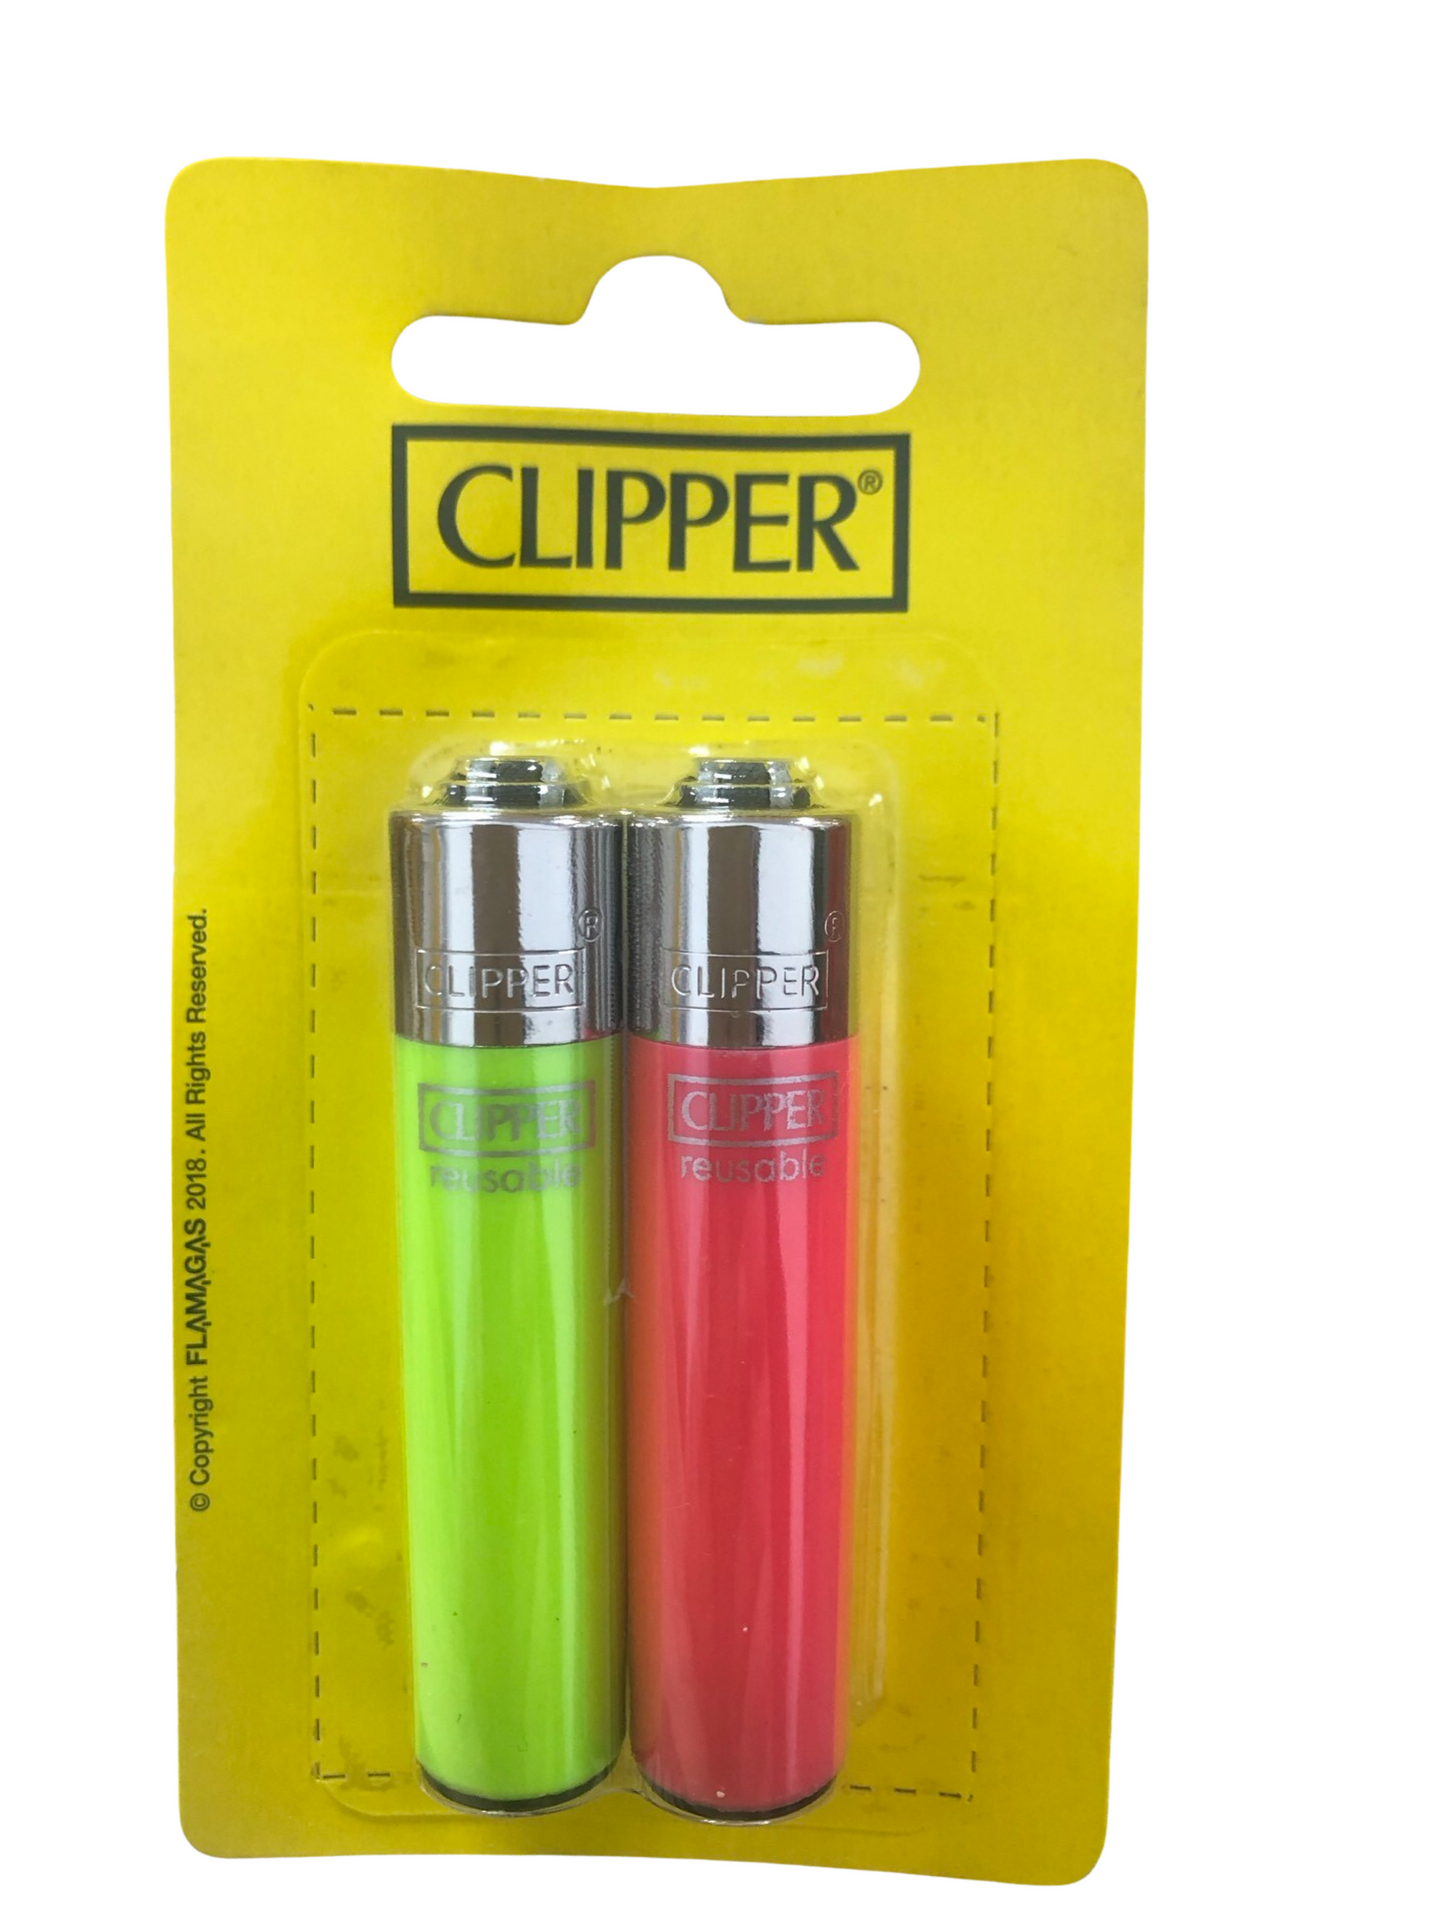 2 x clipper refillable lighter